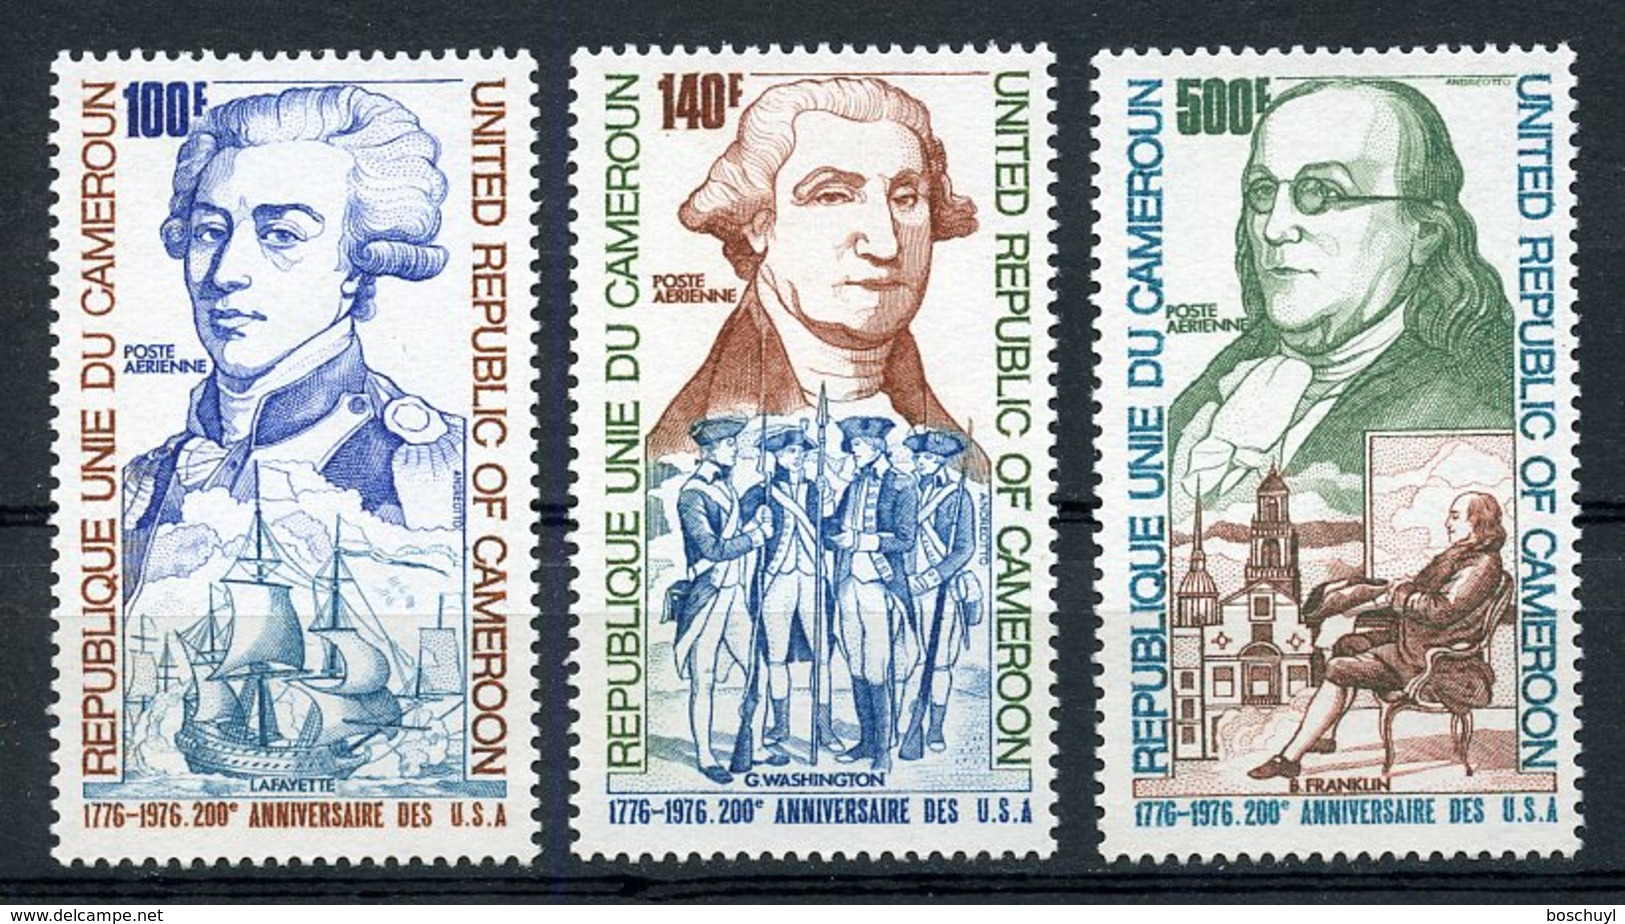 Cameroun, 1975,  USA Bicentennial, Washington, Franklin, Lafayette, Ship, MNH, Michel 809-811 - Camerún (1960-...)